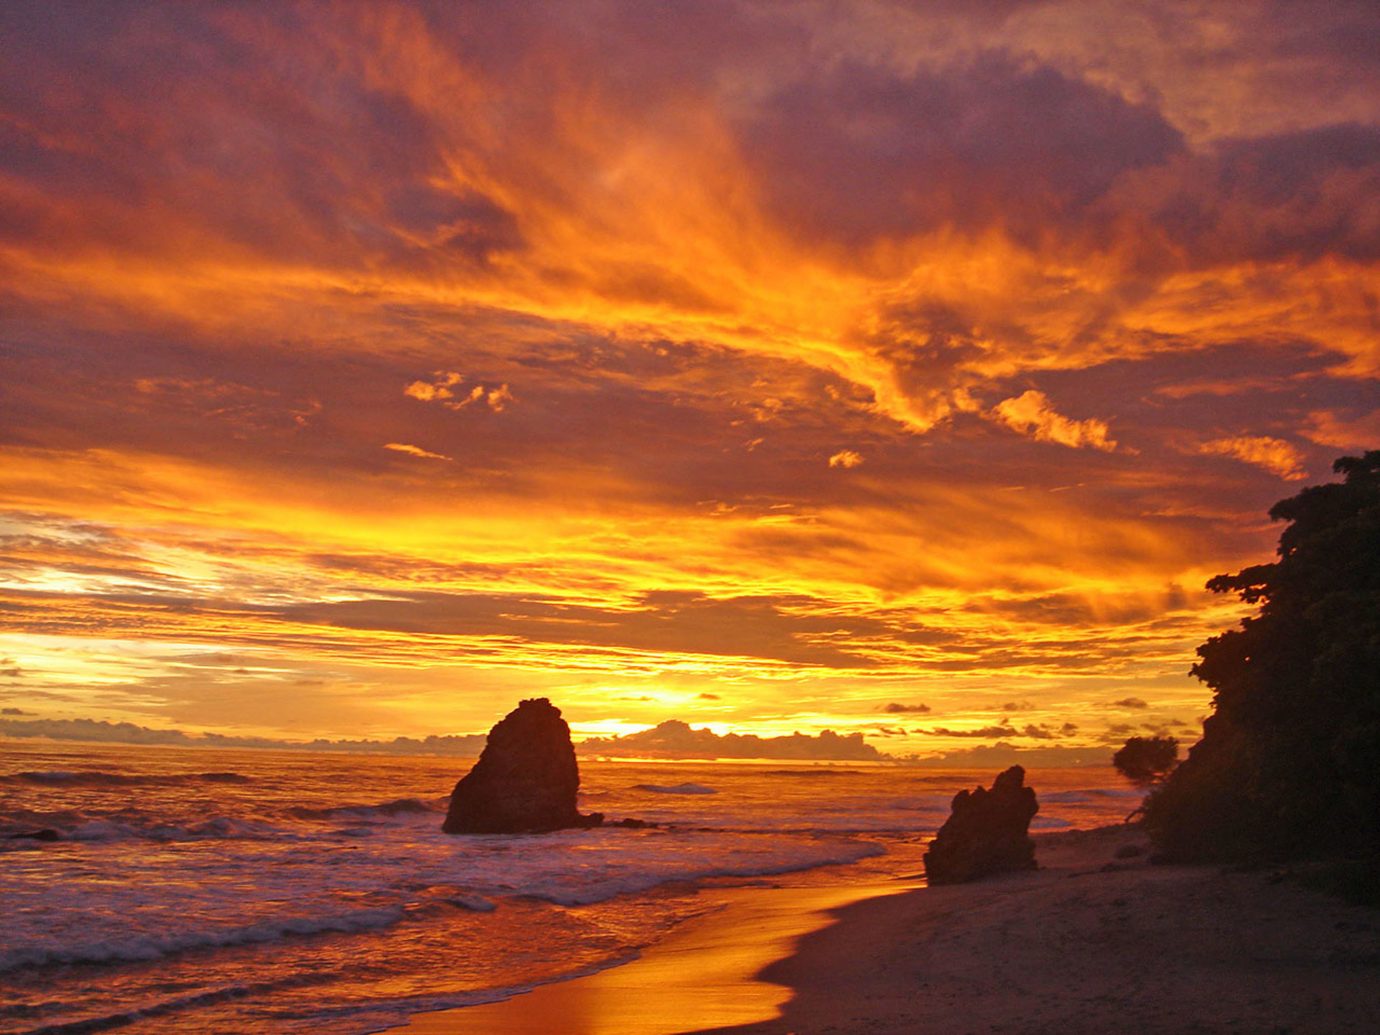 Sunset At Santa Teresa Beach In Playa Santa Teresa